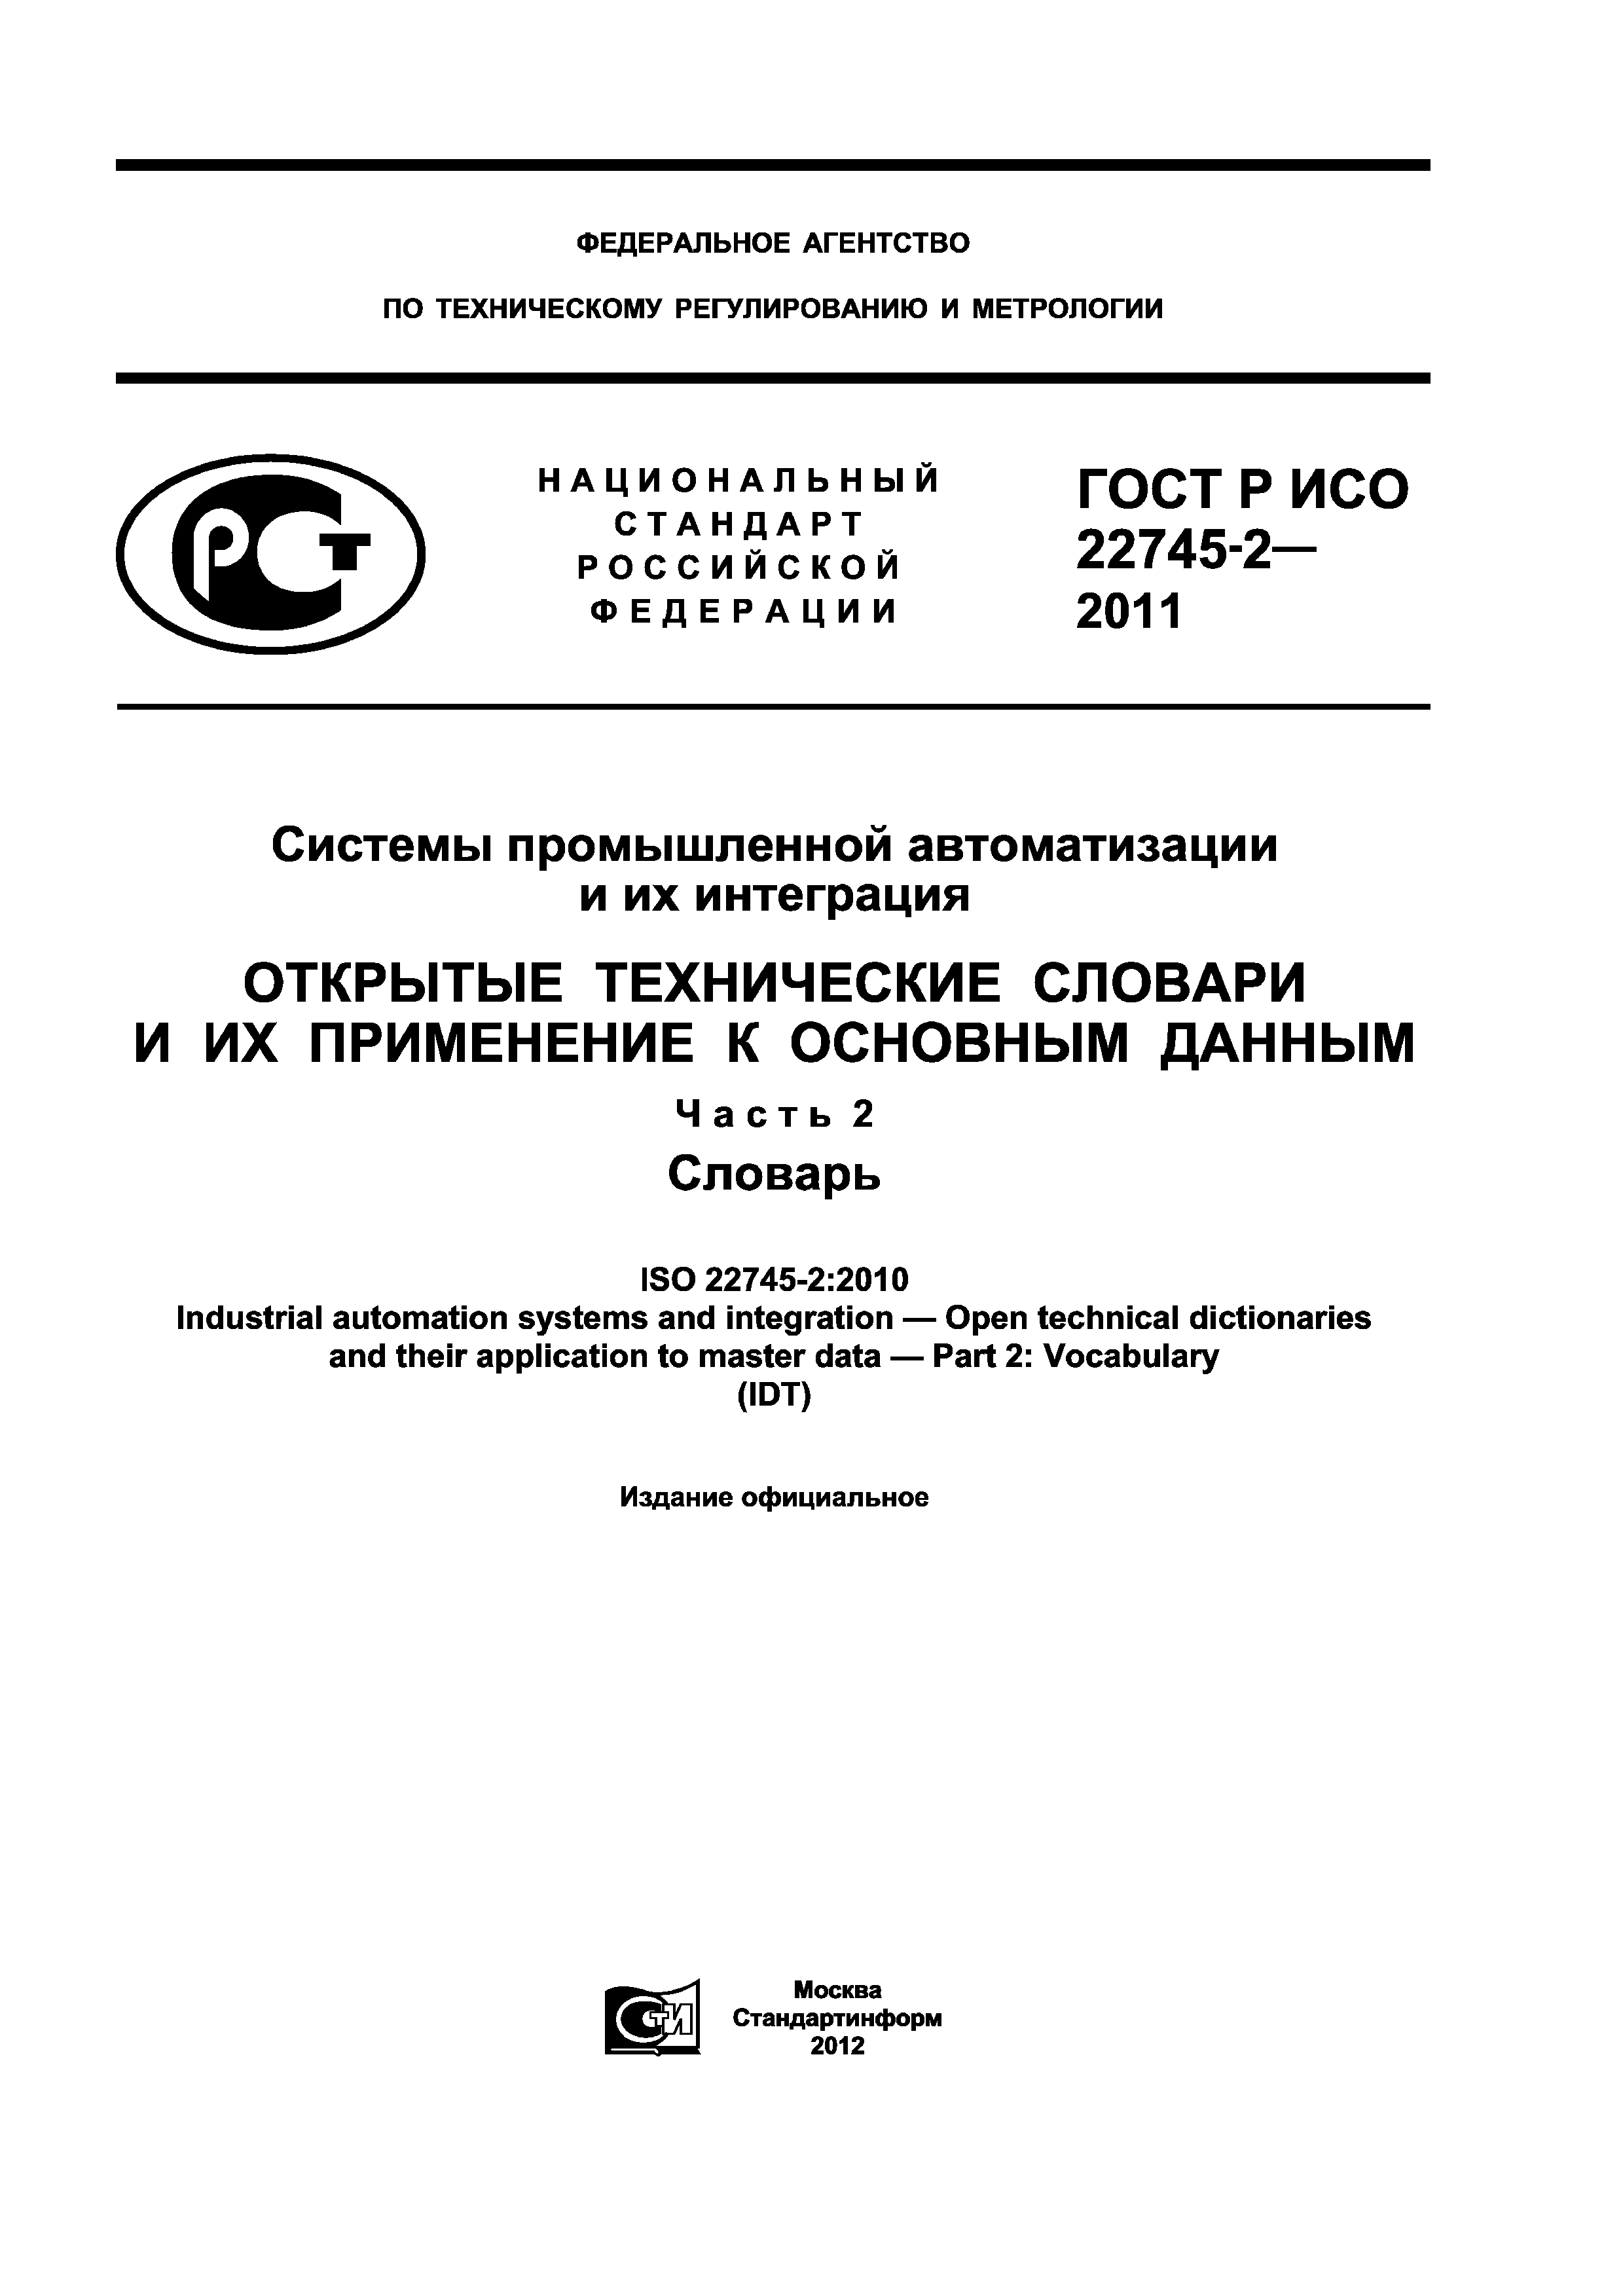 ГОСТ Р ИСО 22745-2-2011